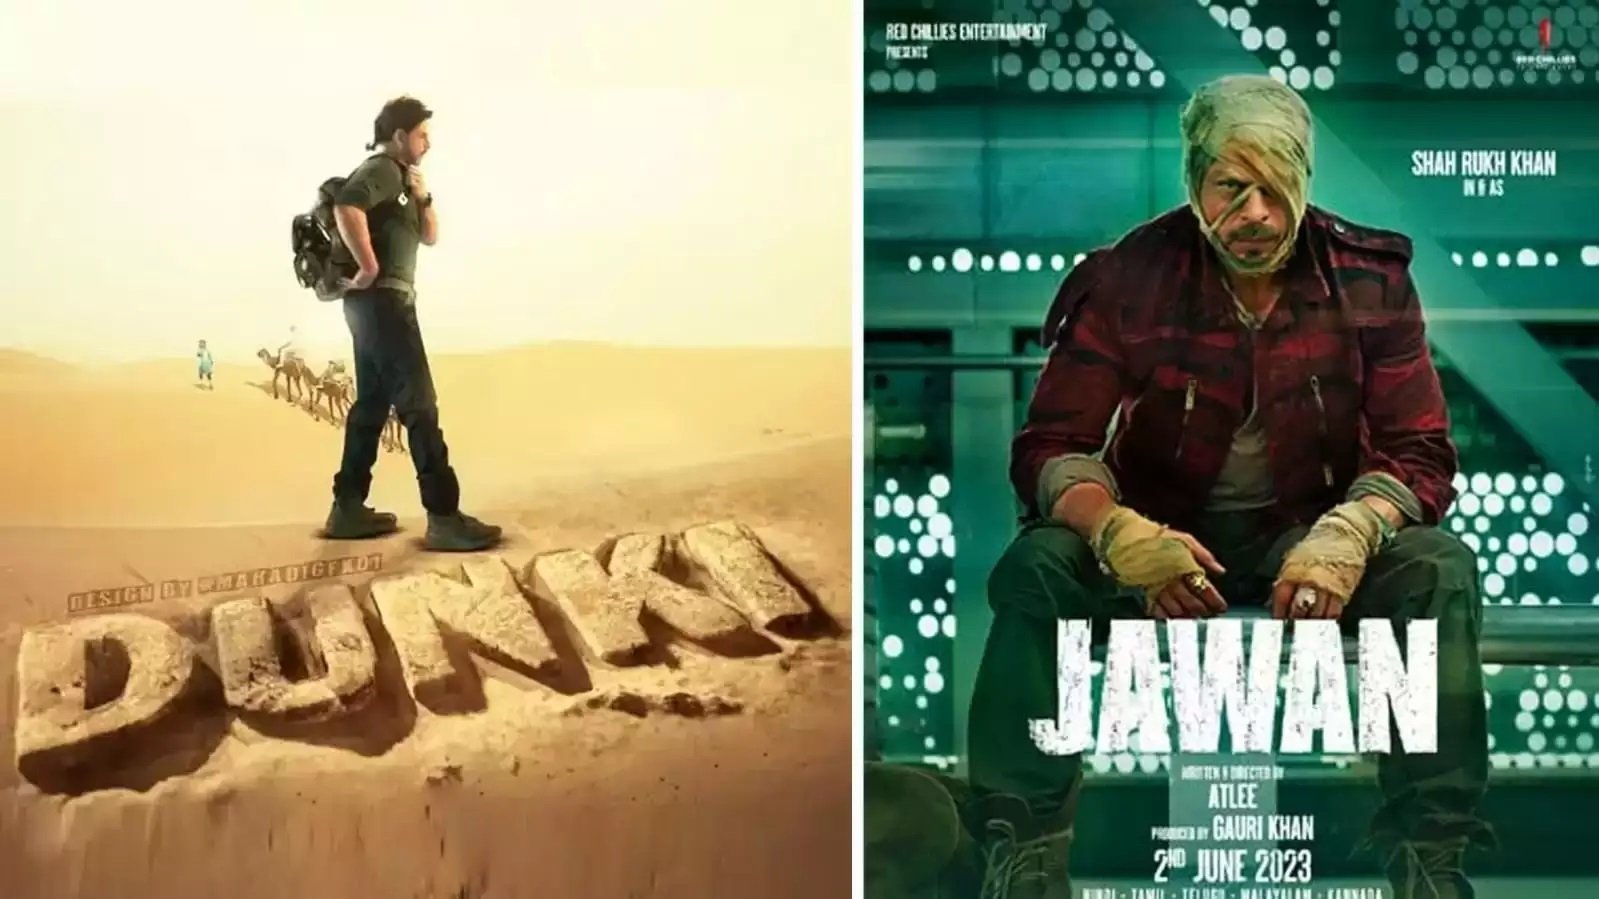 शाहरुख खान की फिल्म 'Dunki' और 'Jawan' रिलीज से पहले ही छाई लोगो के दिलों में और तोड़ा रिकॉर्ड|